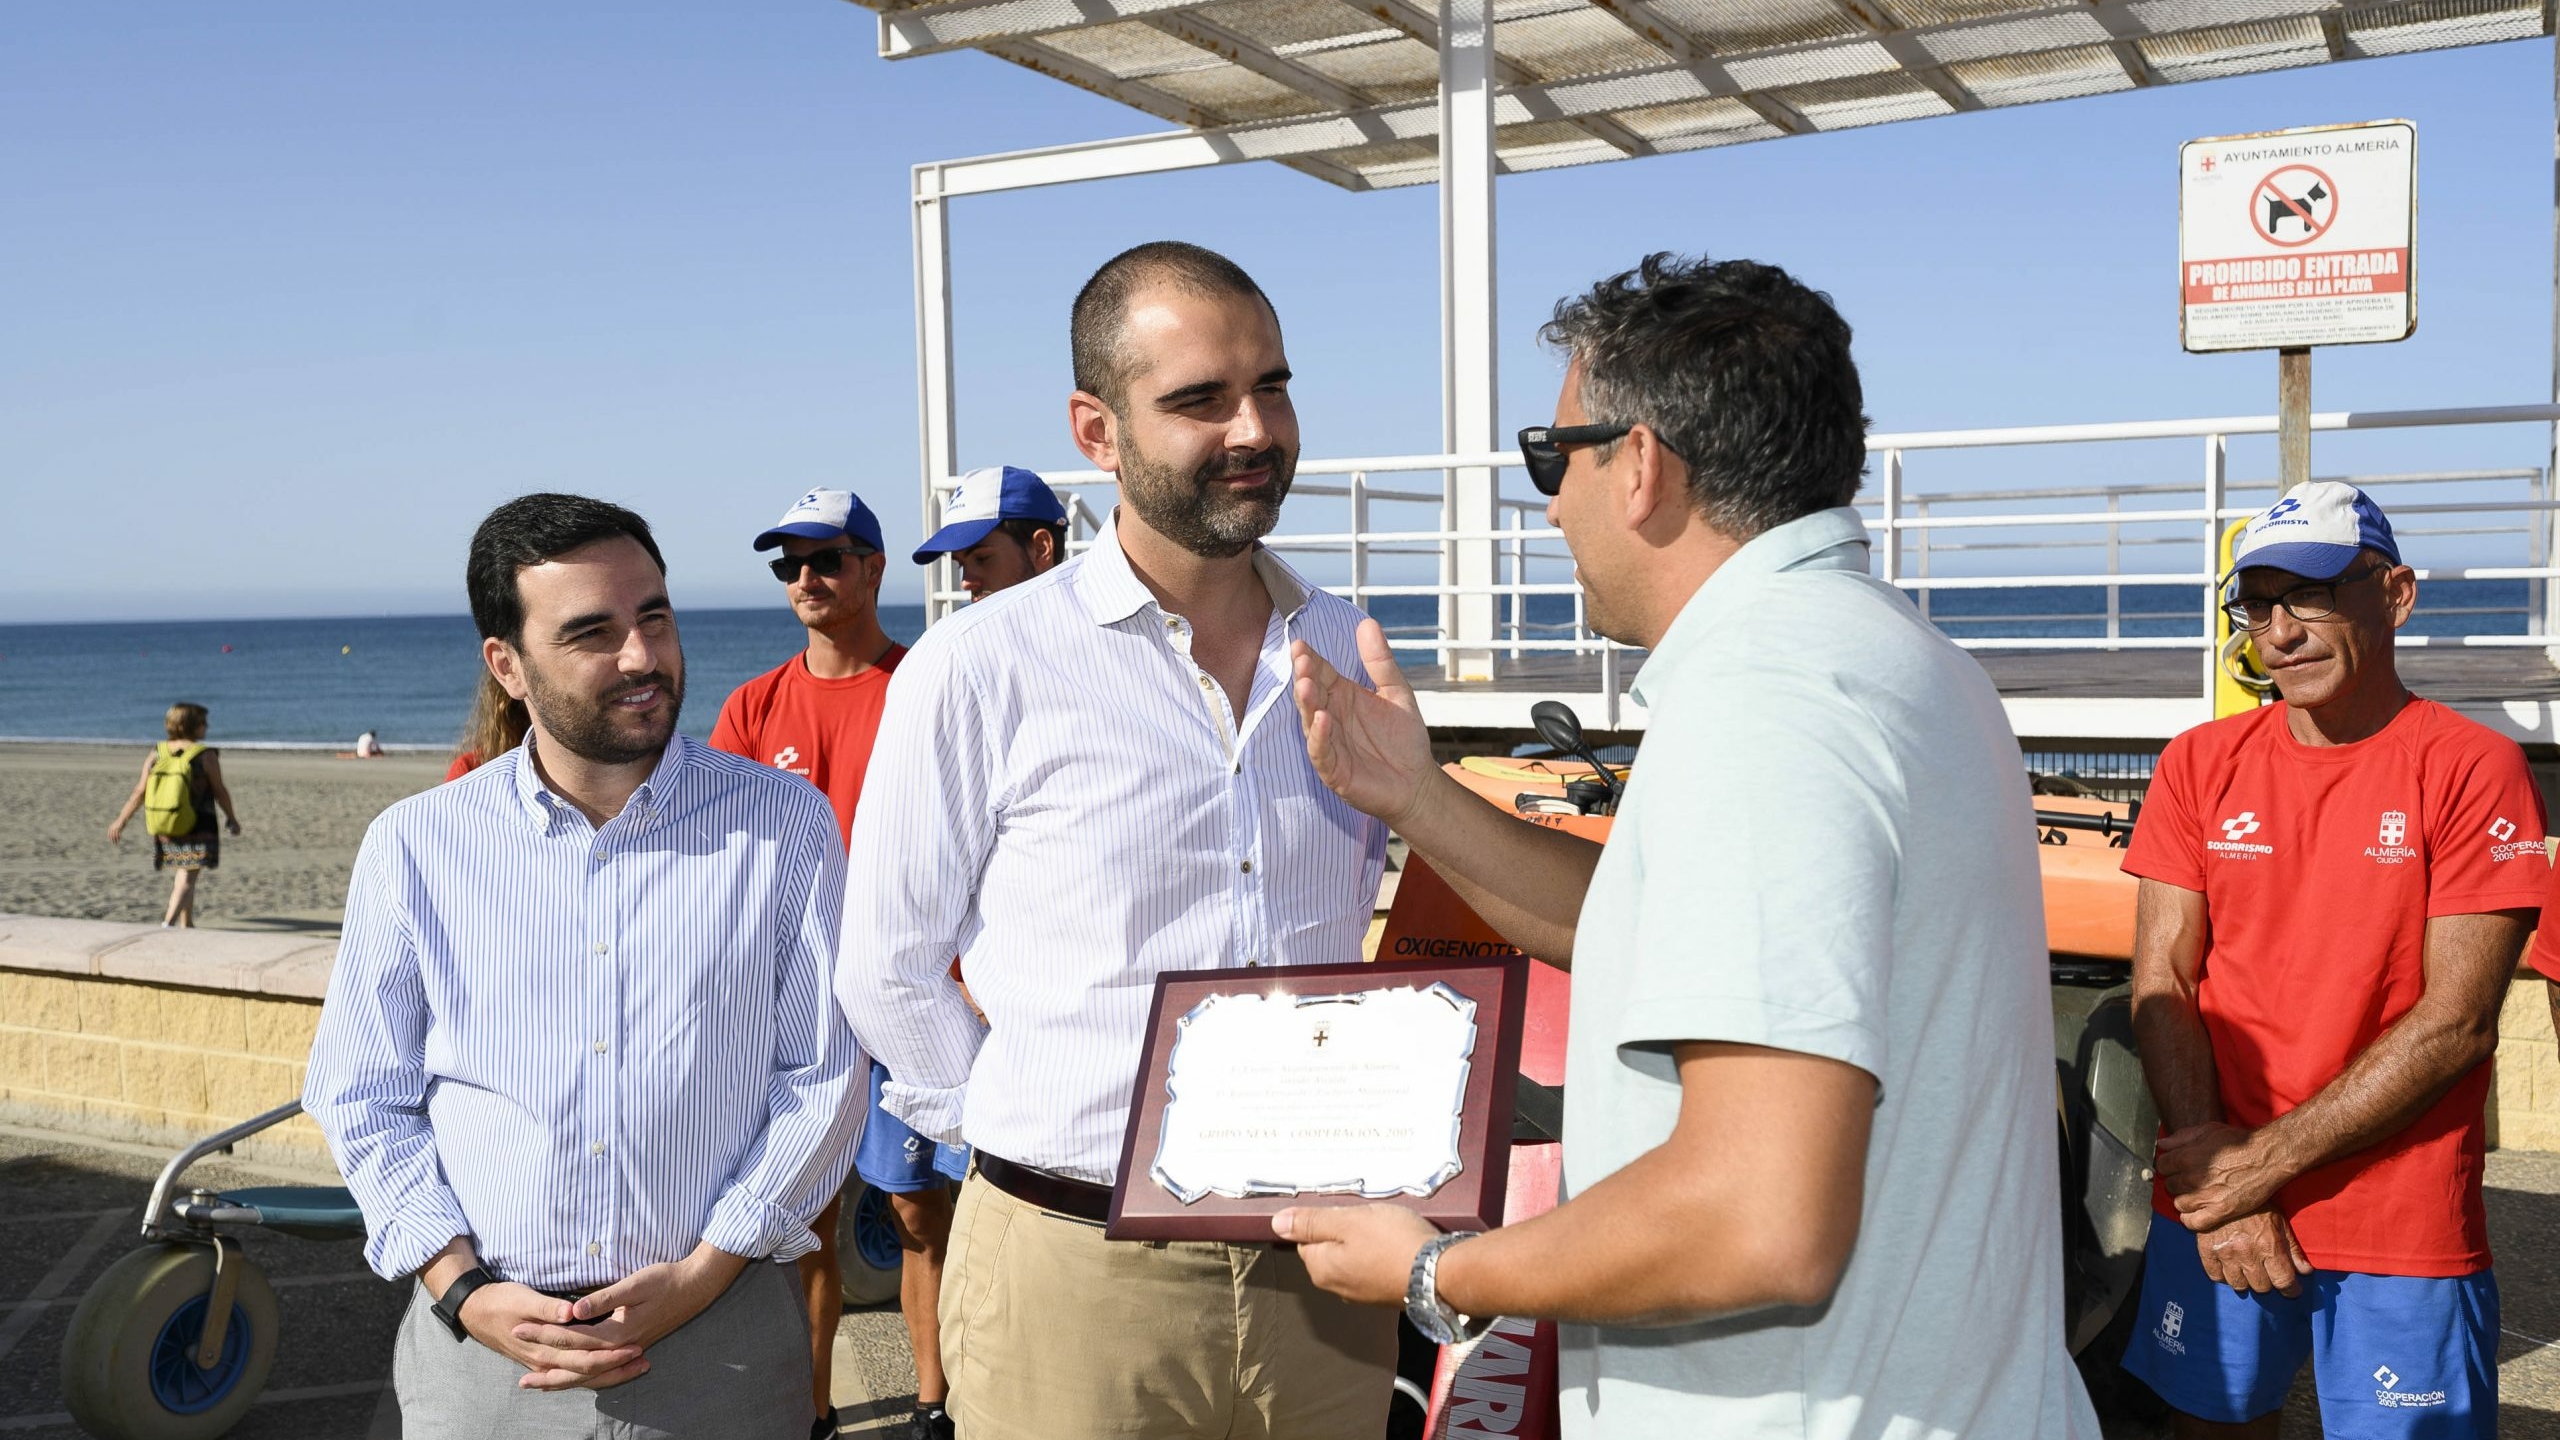 100719 Alcalde reconocimientos socorristas3 scaled uai - Turismo Almería